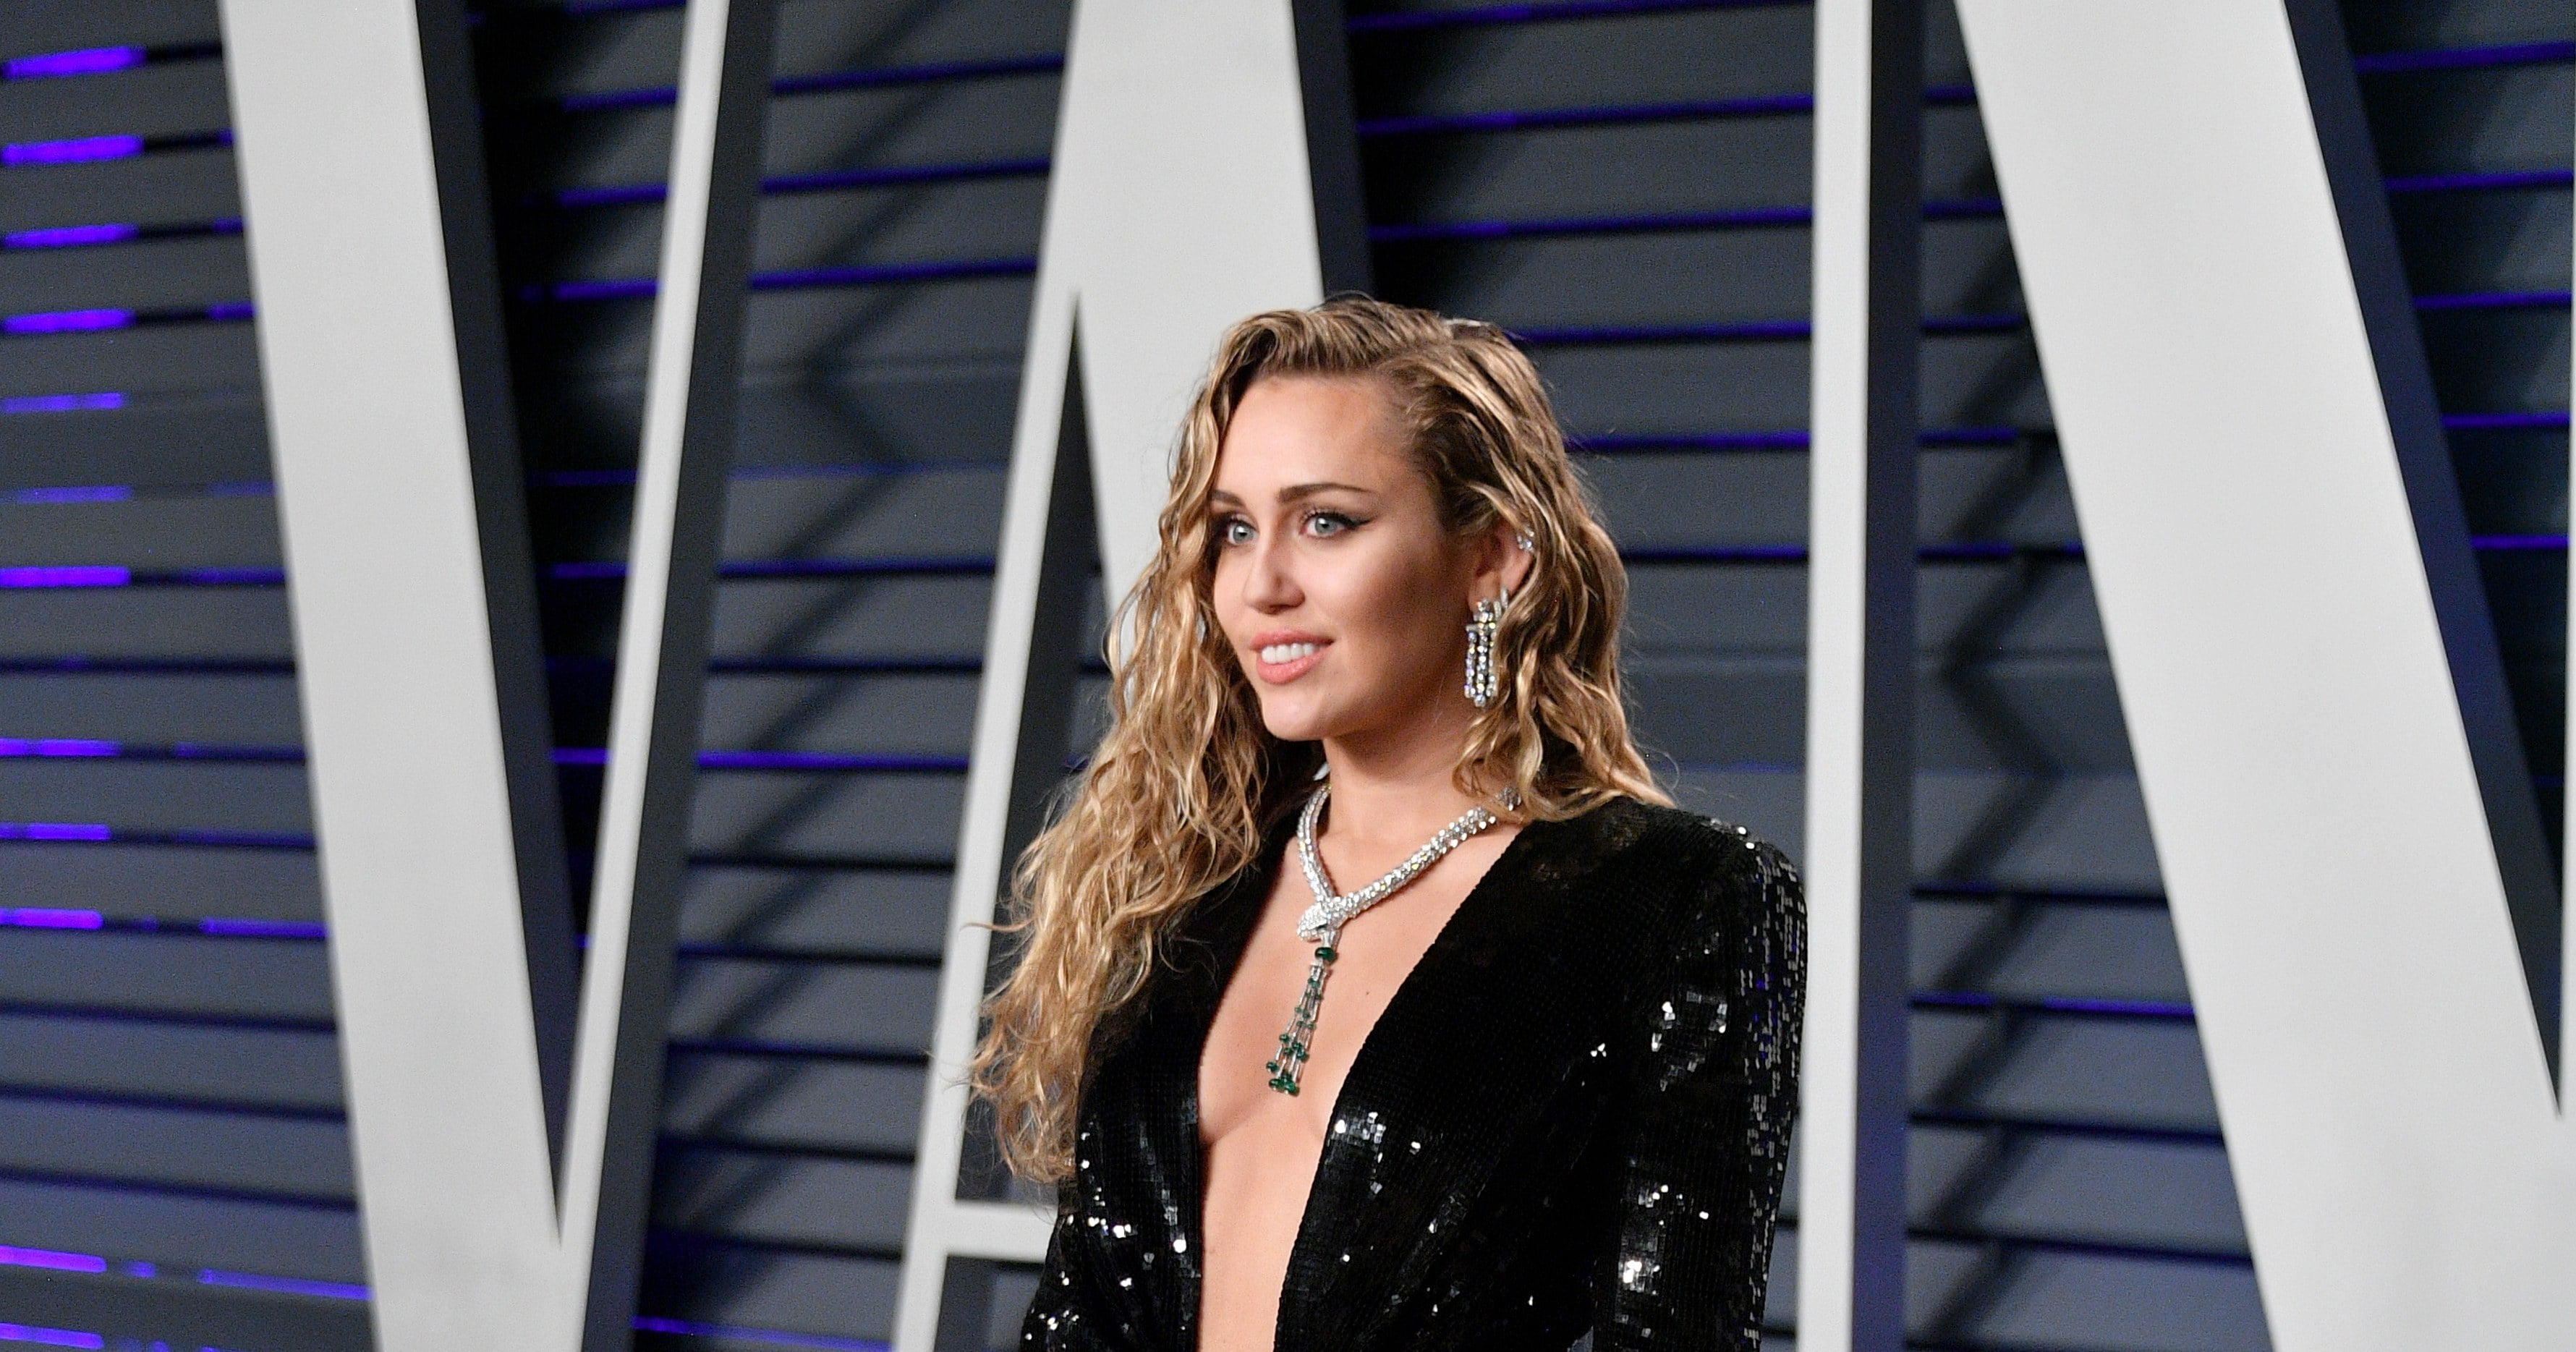 Miley Cyrus Vanity Fair Oscar Party Dress 2019 Popsugar Fashion 2742